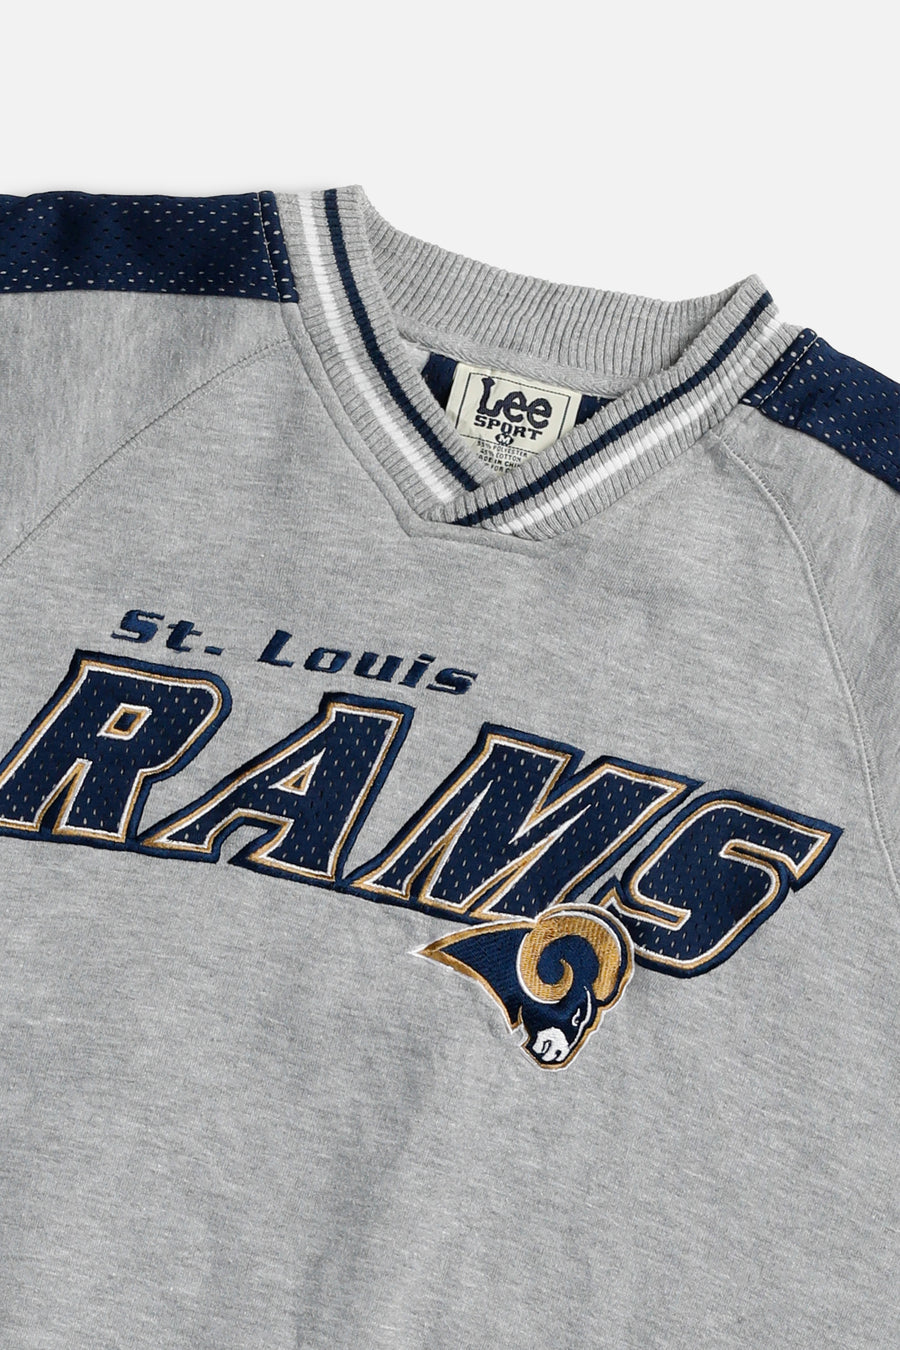 Vintage St. Louis Rams NFL Sweatshirt - M